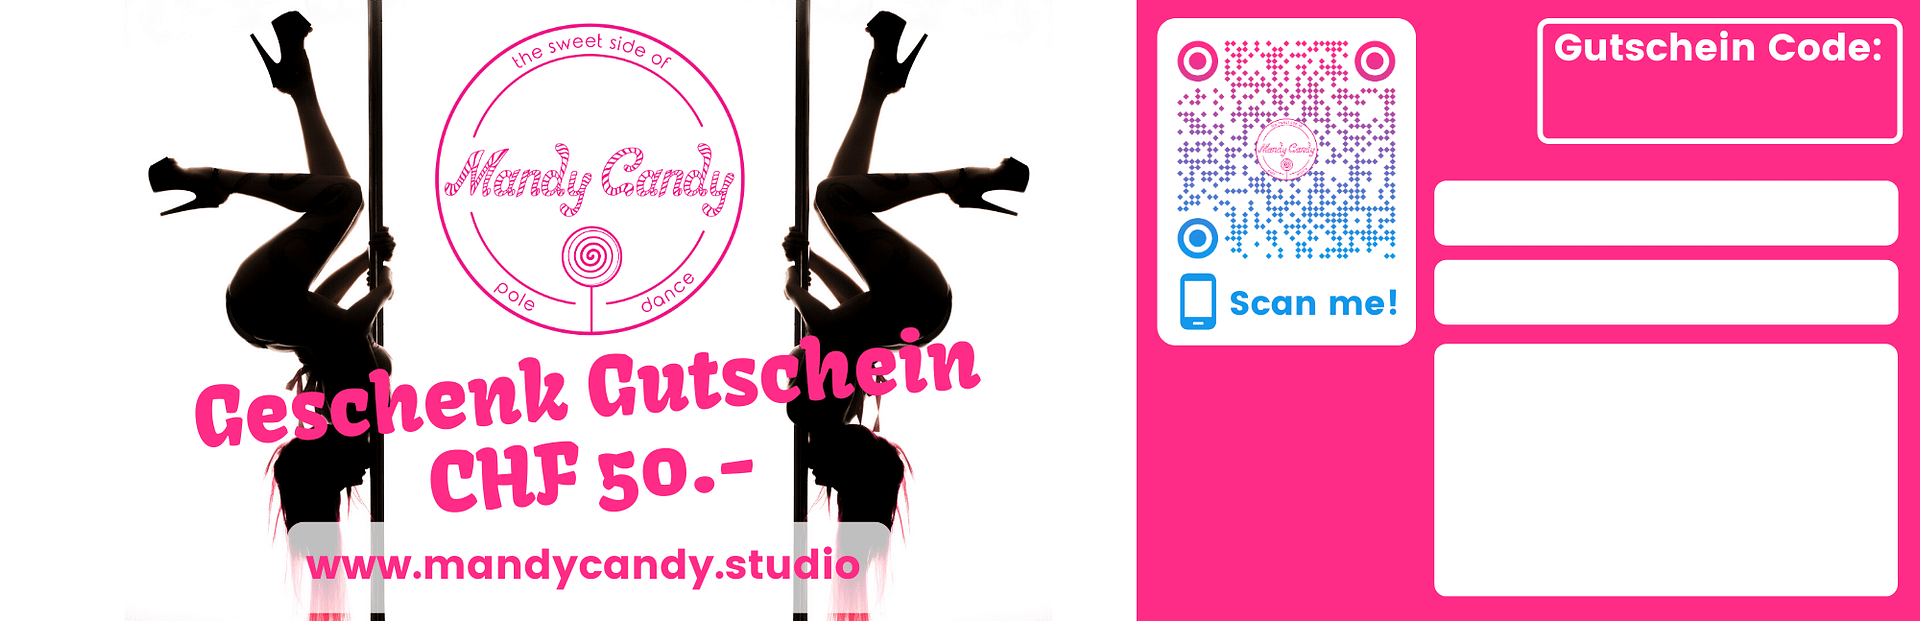 Geschenk Gutscheine
Mandy Candy's Pole Dance Studio